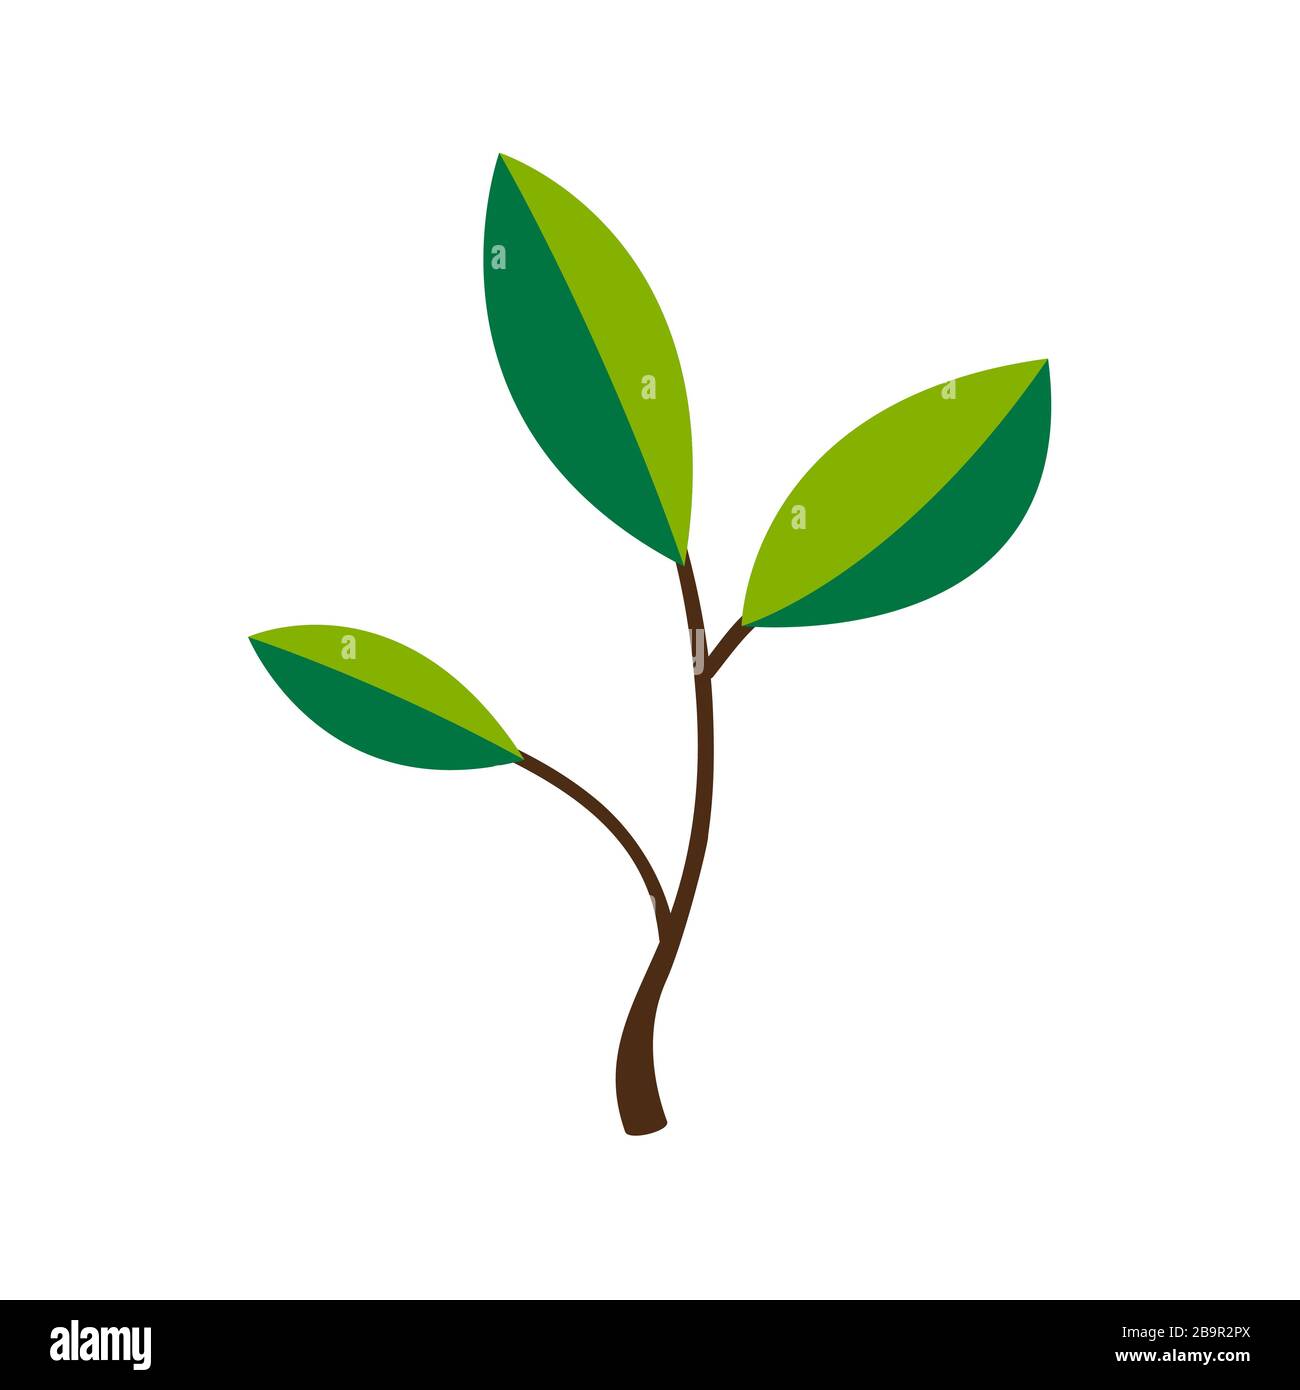 Baumsymbol mit grünen Blättern - ECO-Konzeptvektor oder Firmenlogo Designelement. Umweltschutz, Naturschutz, Umweltfreundlichkeit Stock Vektor